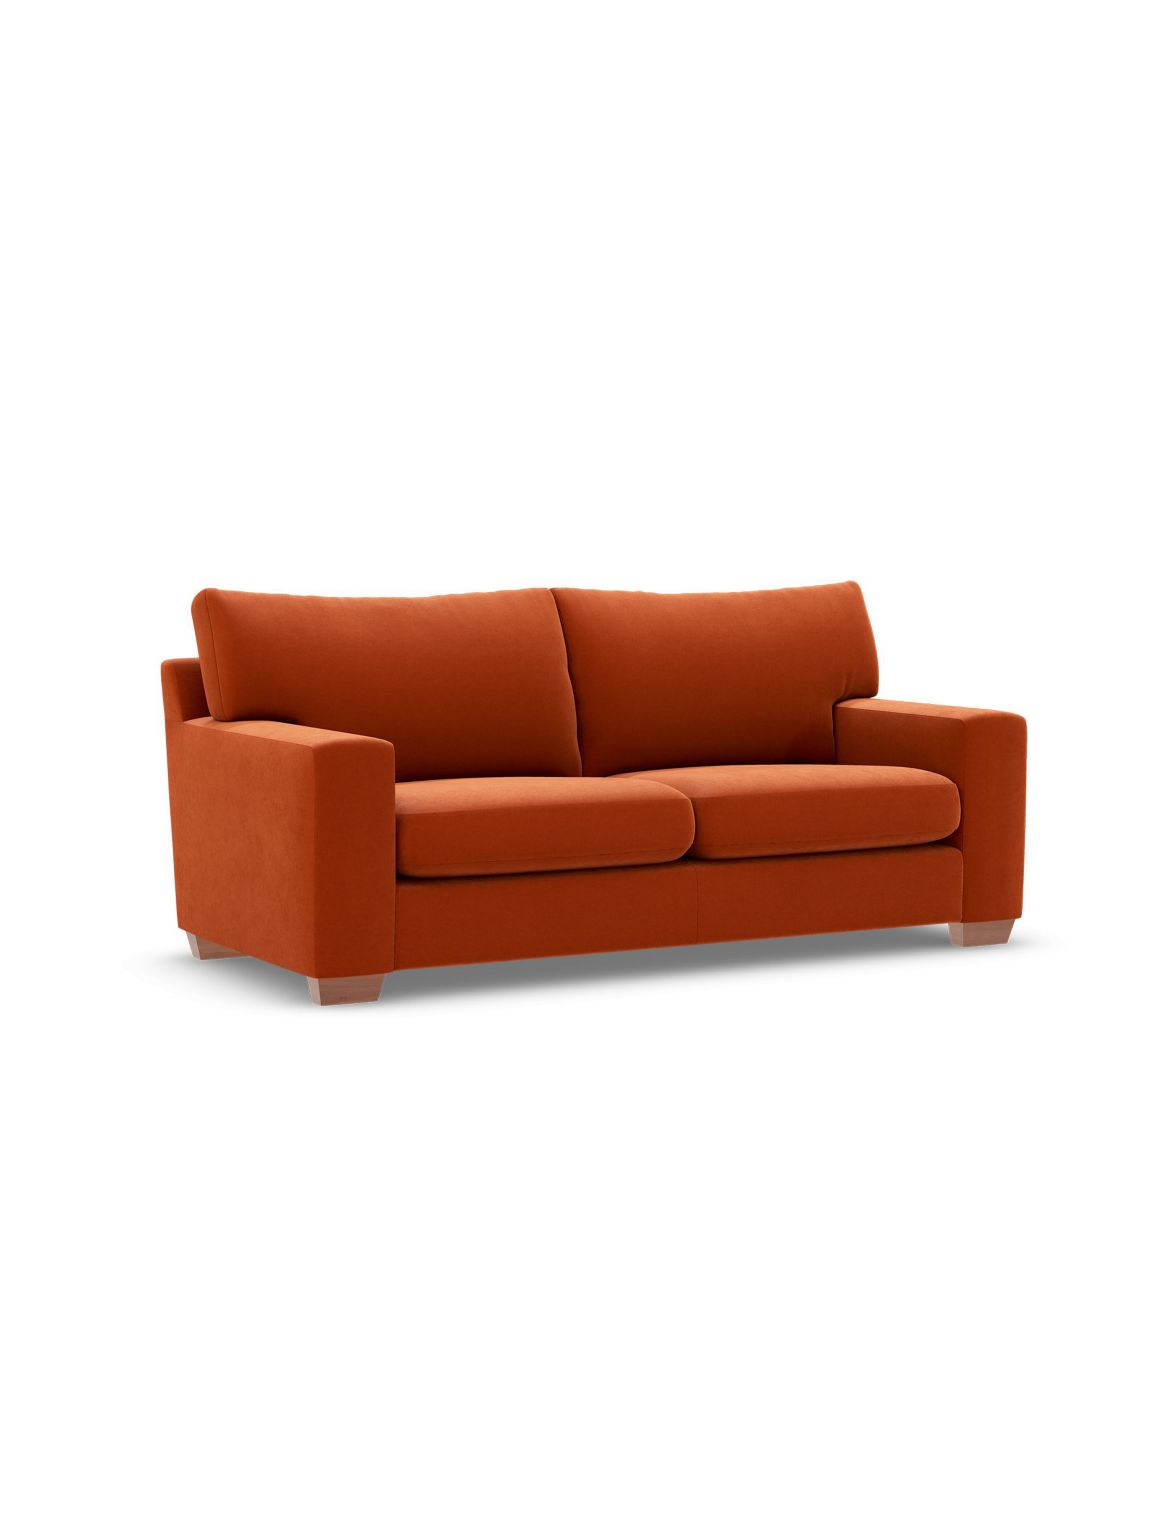 Alfie Medium Sofa orange